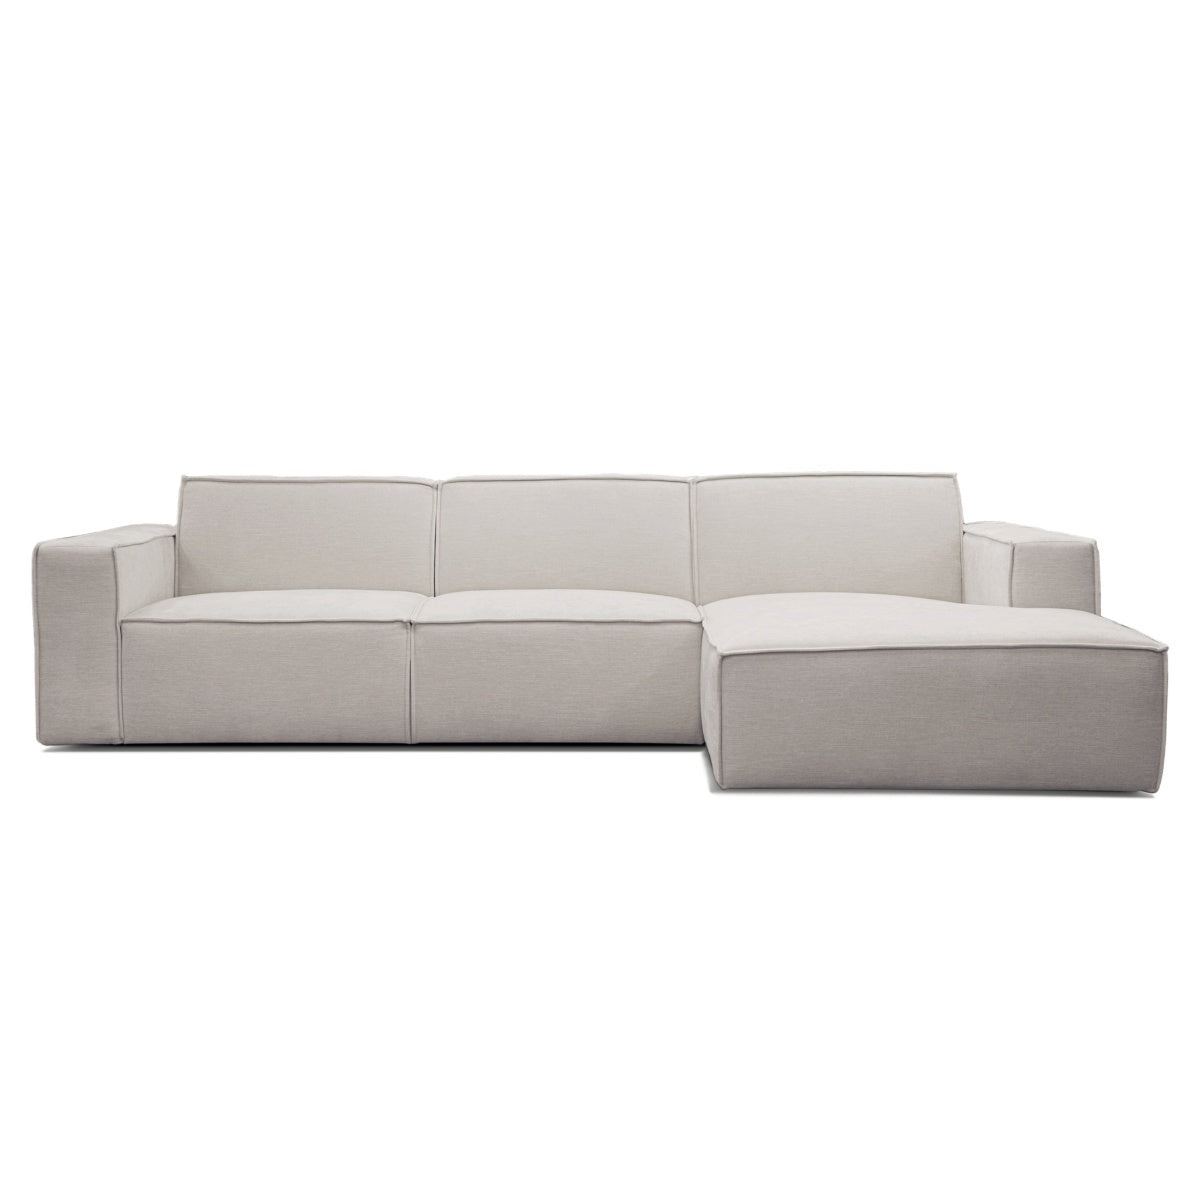 Lyon højrevendt sofa med chaiselong - Møbelkompagniet